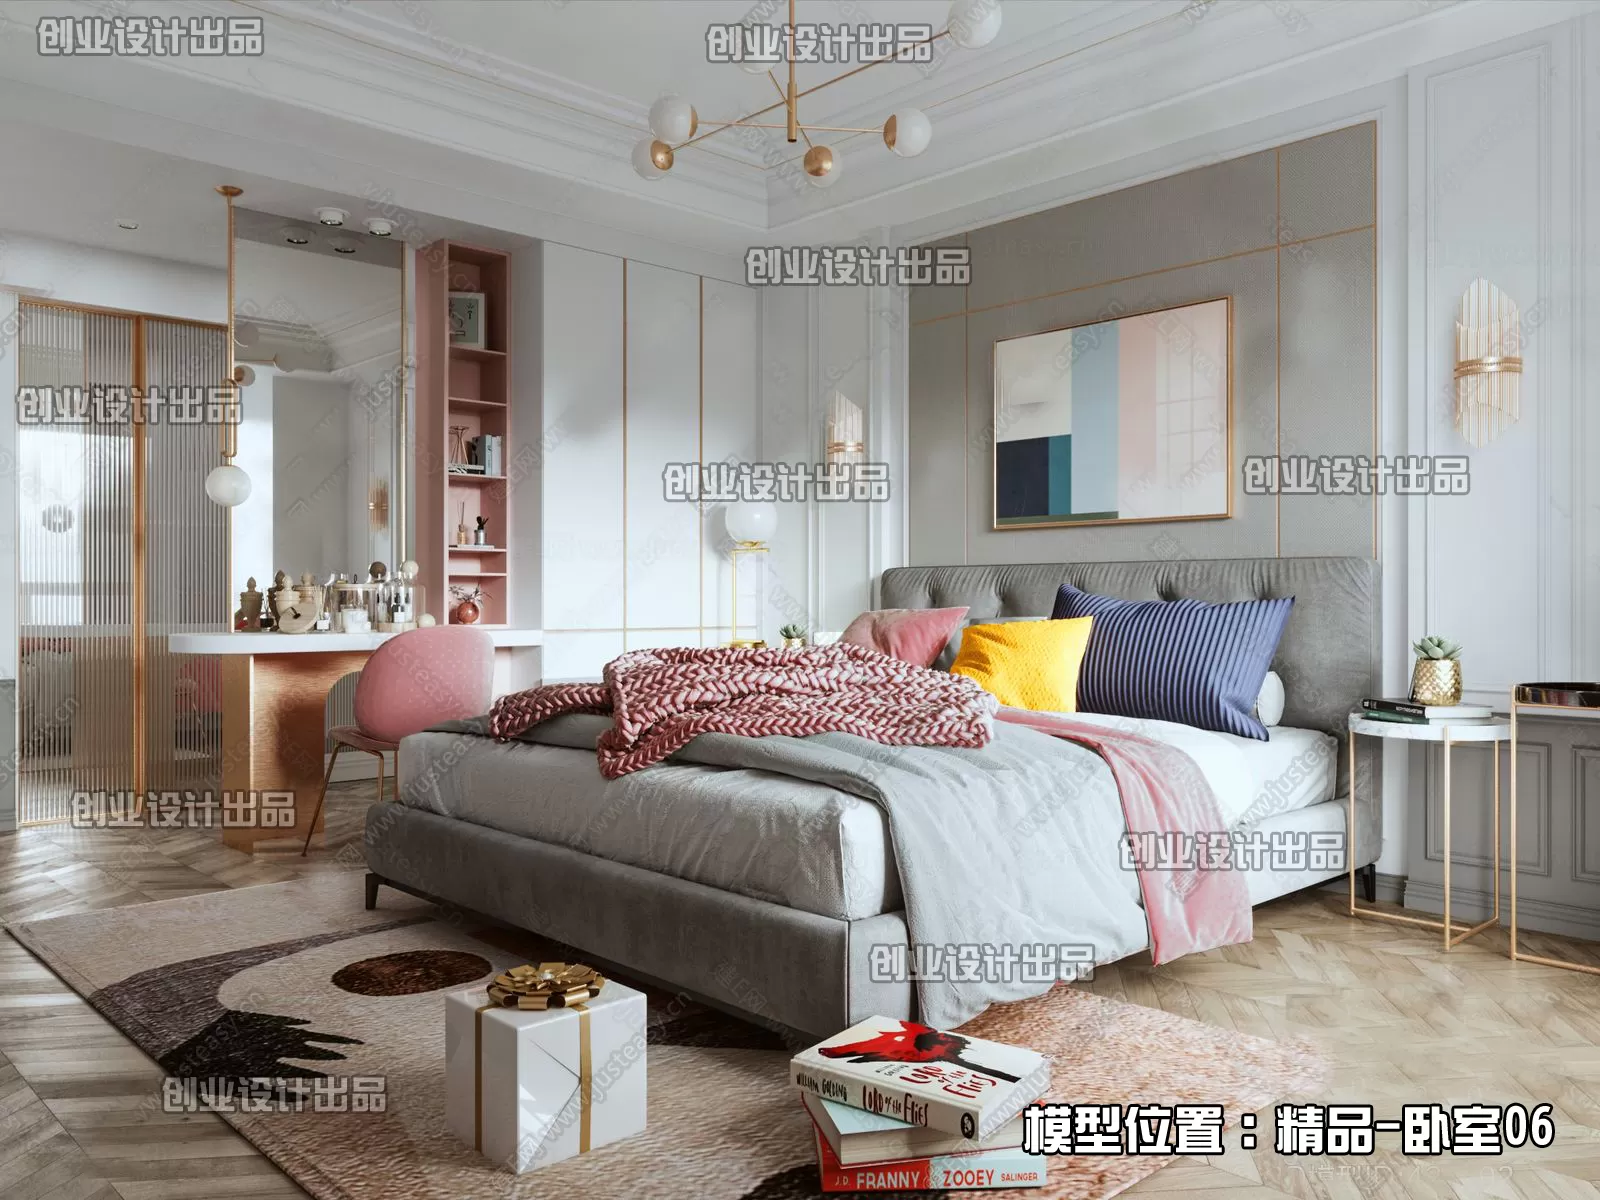 Bedroom – Modern Interior Design – 3D Models – 152